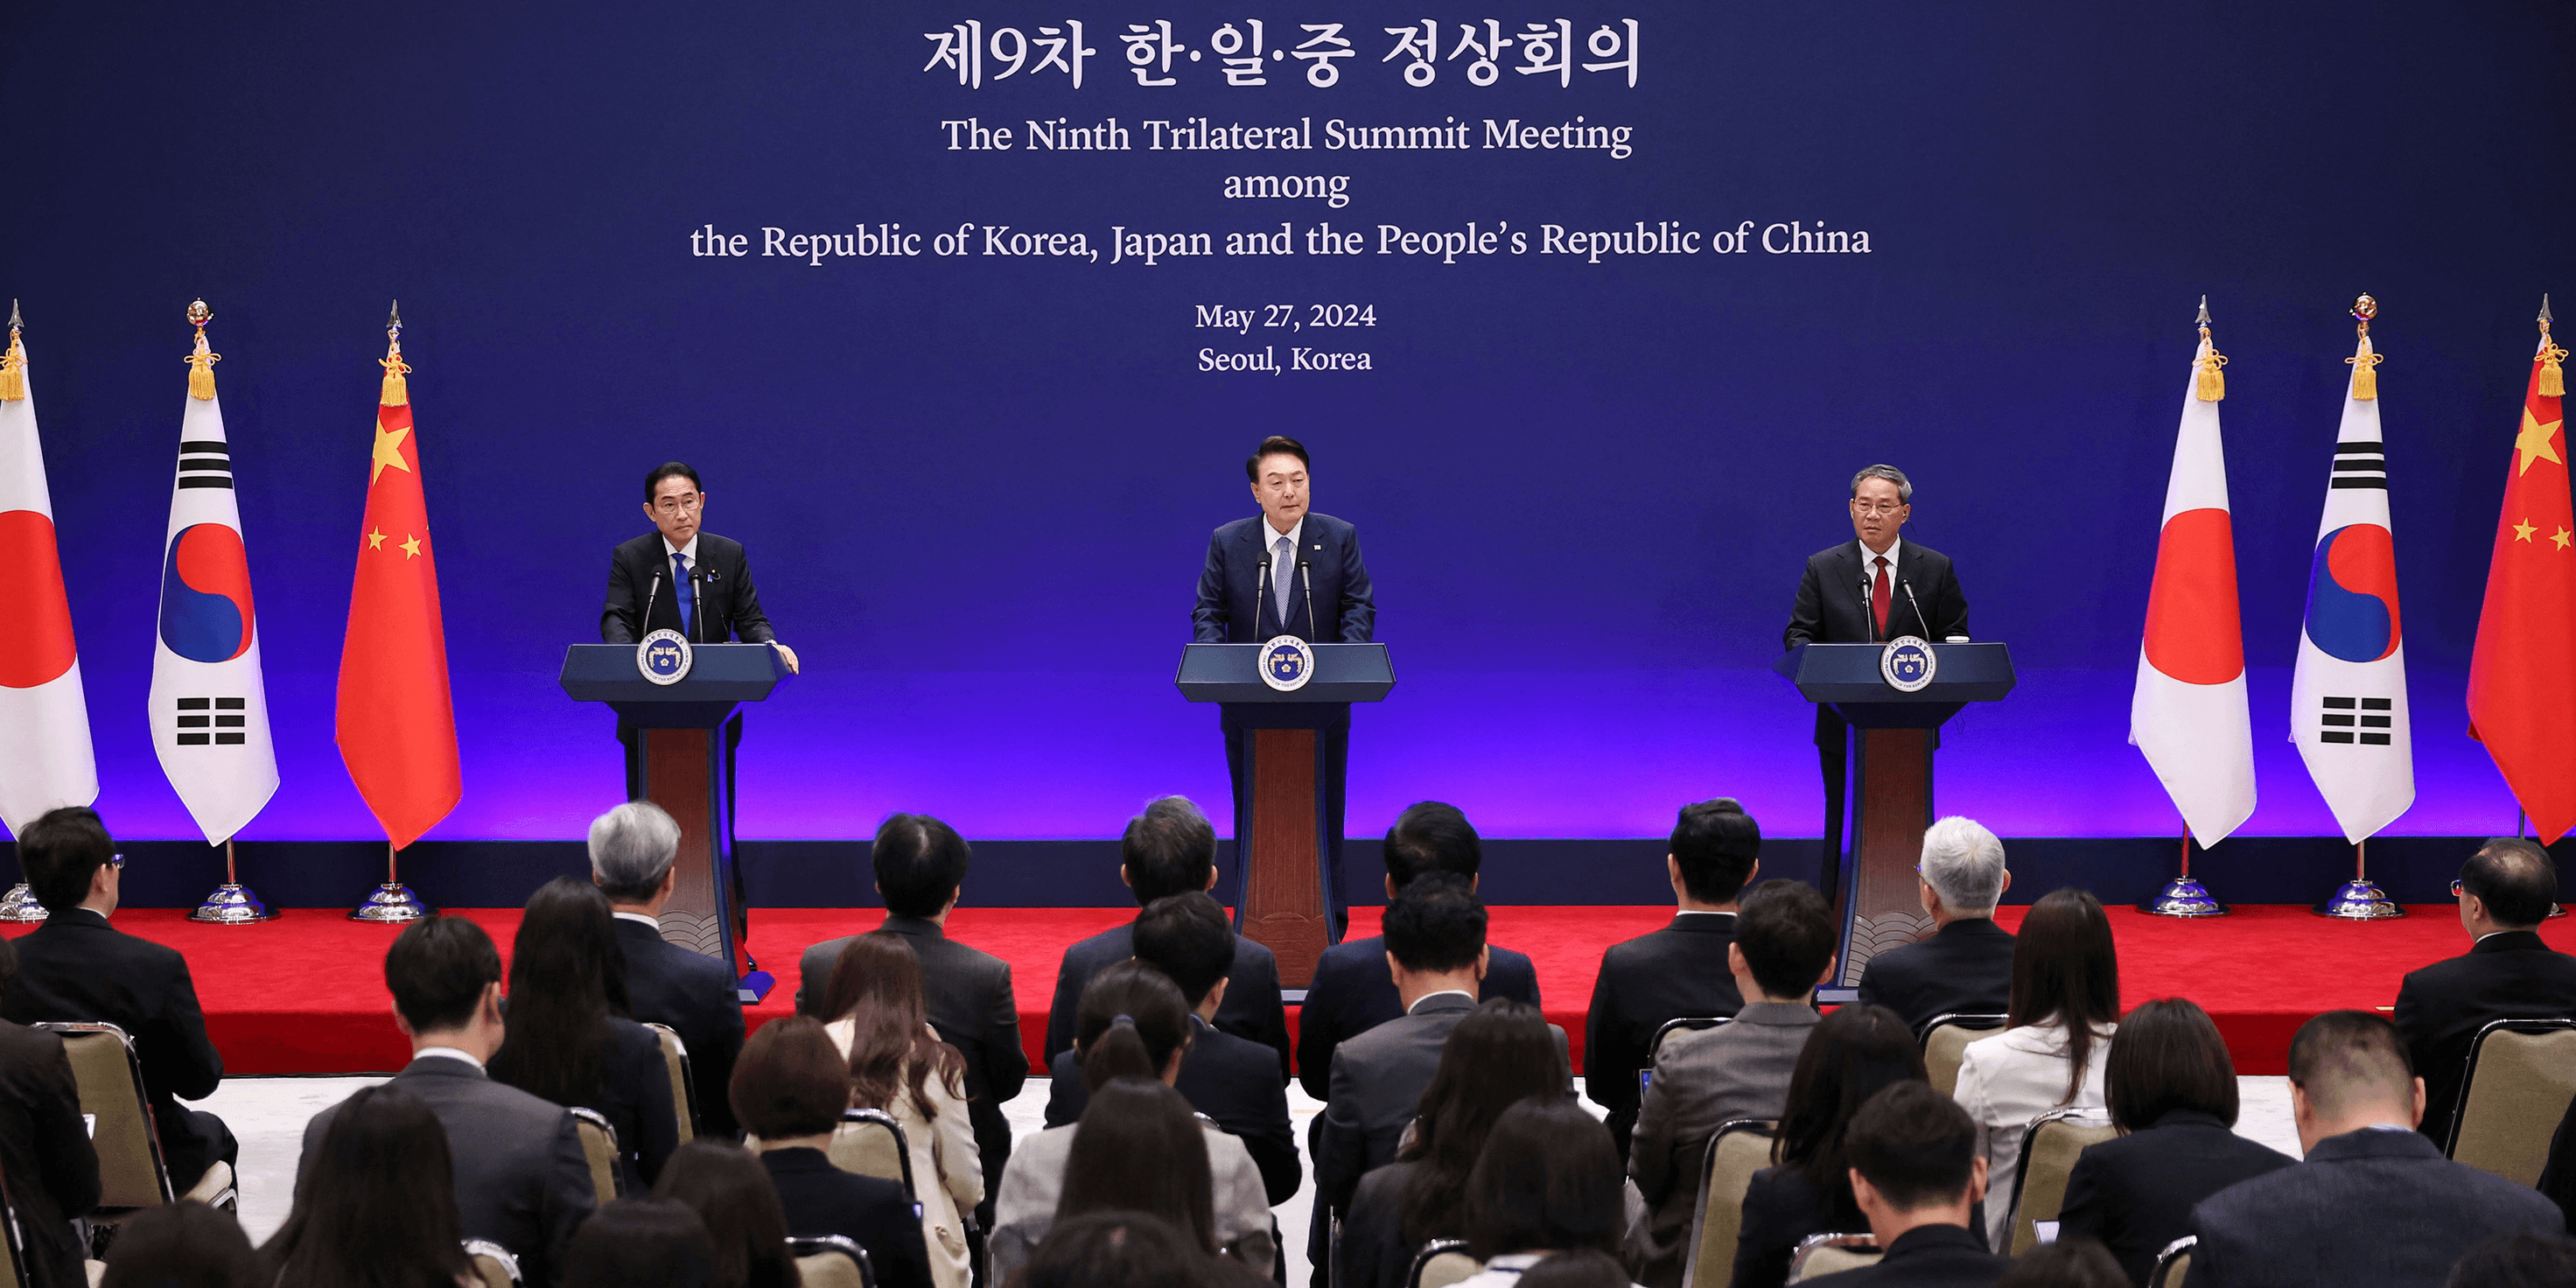 هل ينجح اجتماع سيول في إنهاء الخلافات بين اليابان وكوريا الجنوبية والصين؟